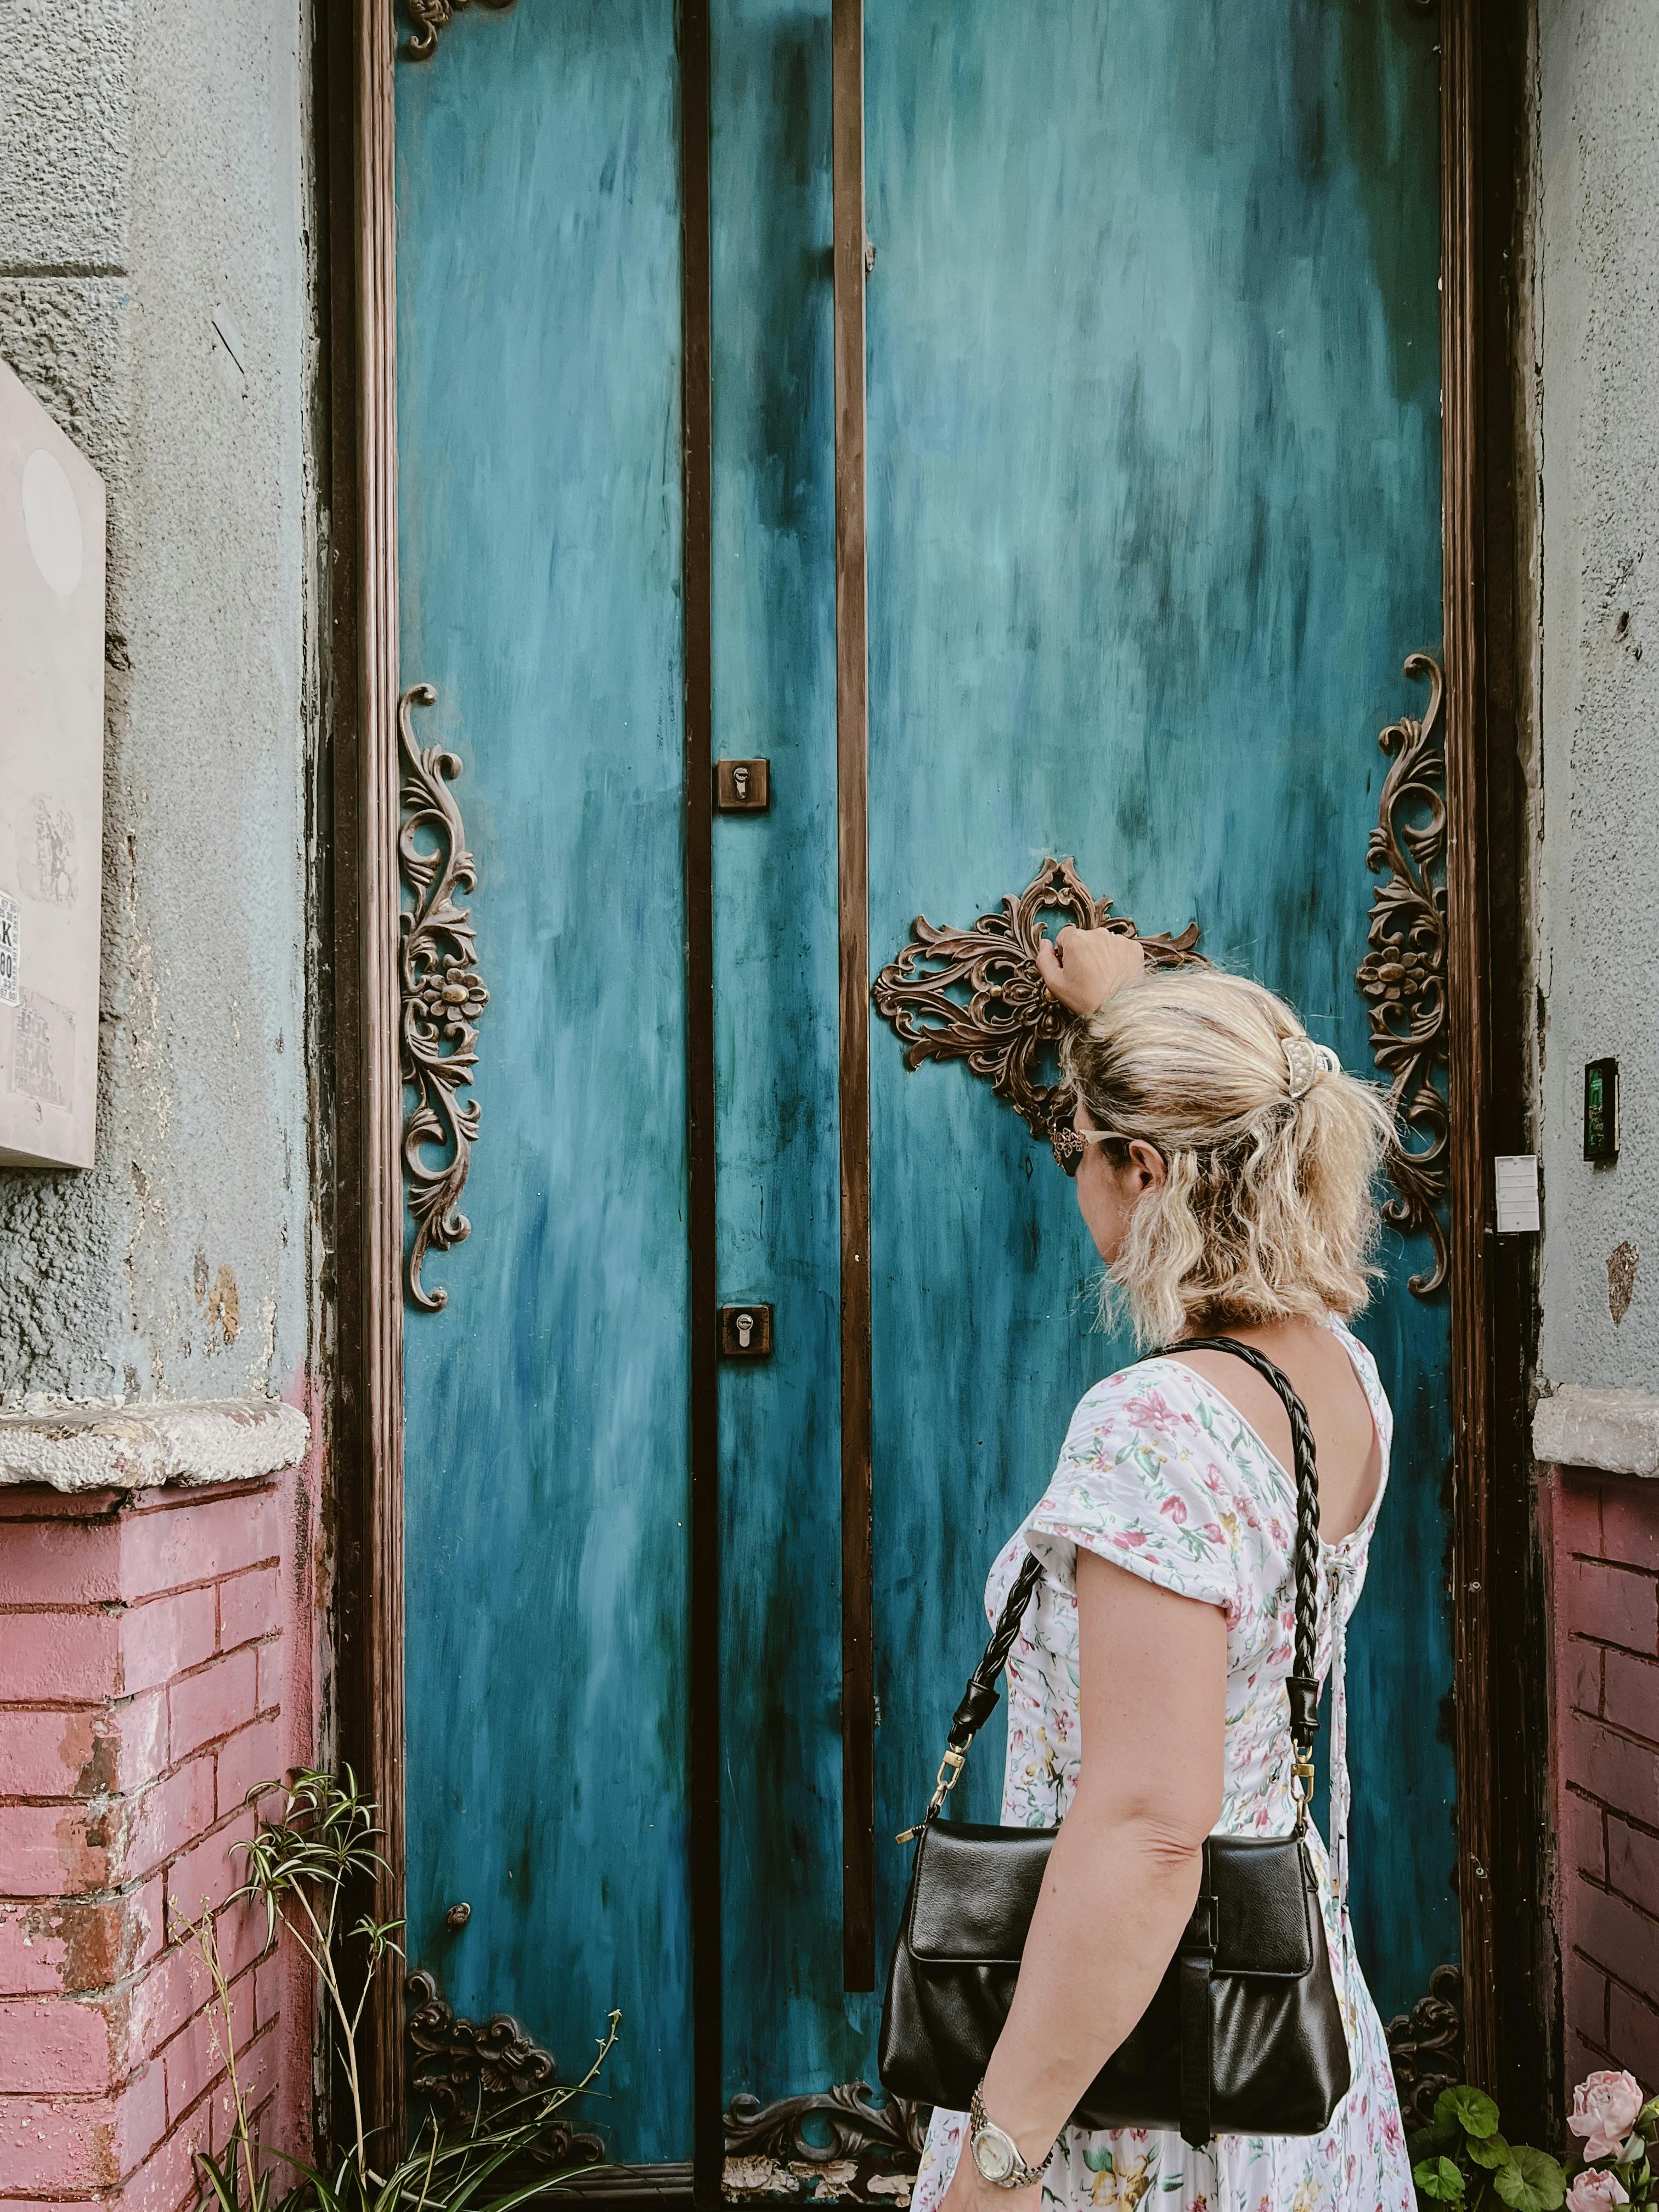 Woman knocks on the door | Source: Pexels